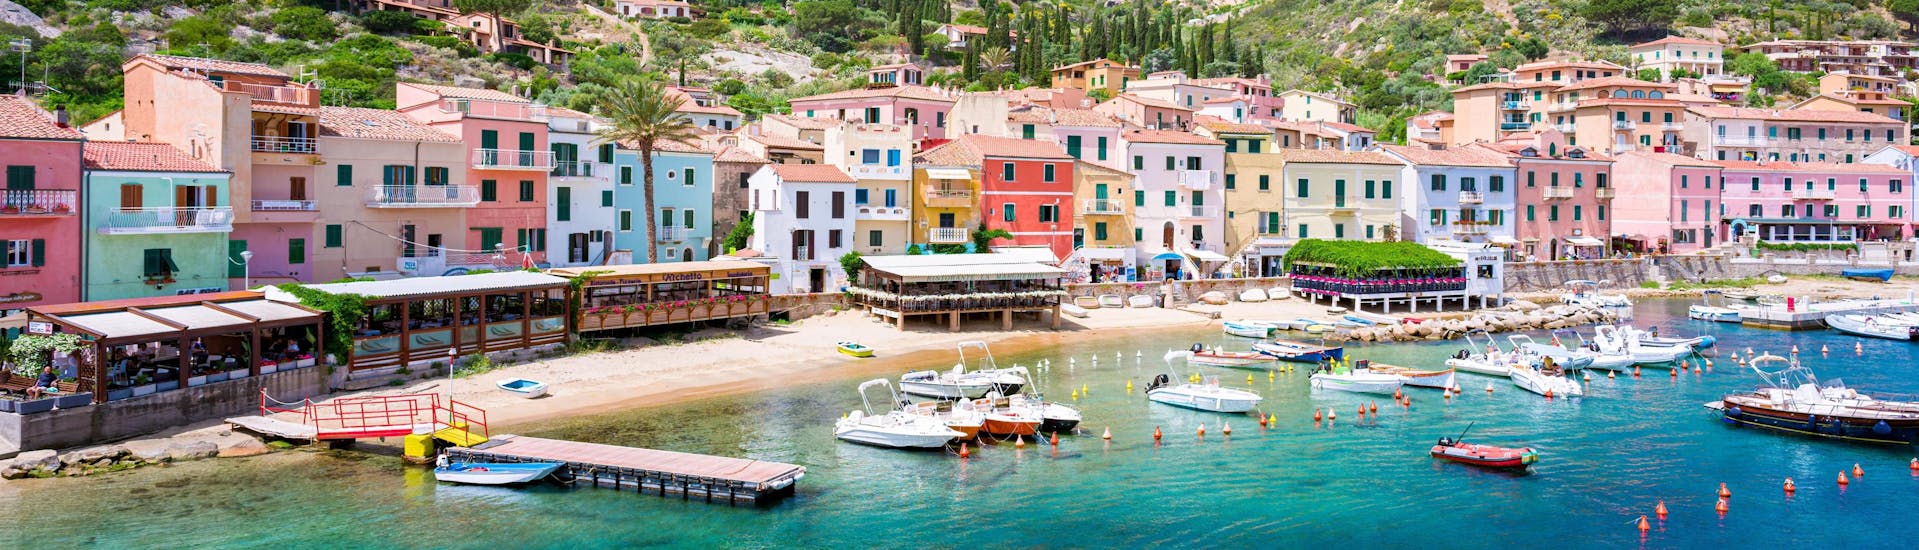 Blick auf den Hafen von Giglio, einem wunderschönen Ort, den Sie während einer Bootstour zum Toskanischen Archipel besuchen können.